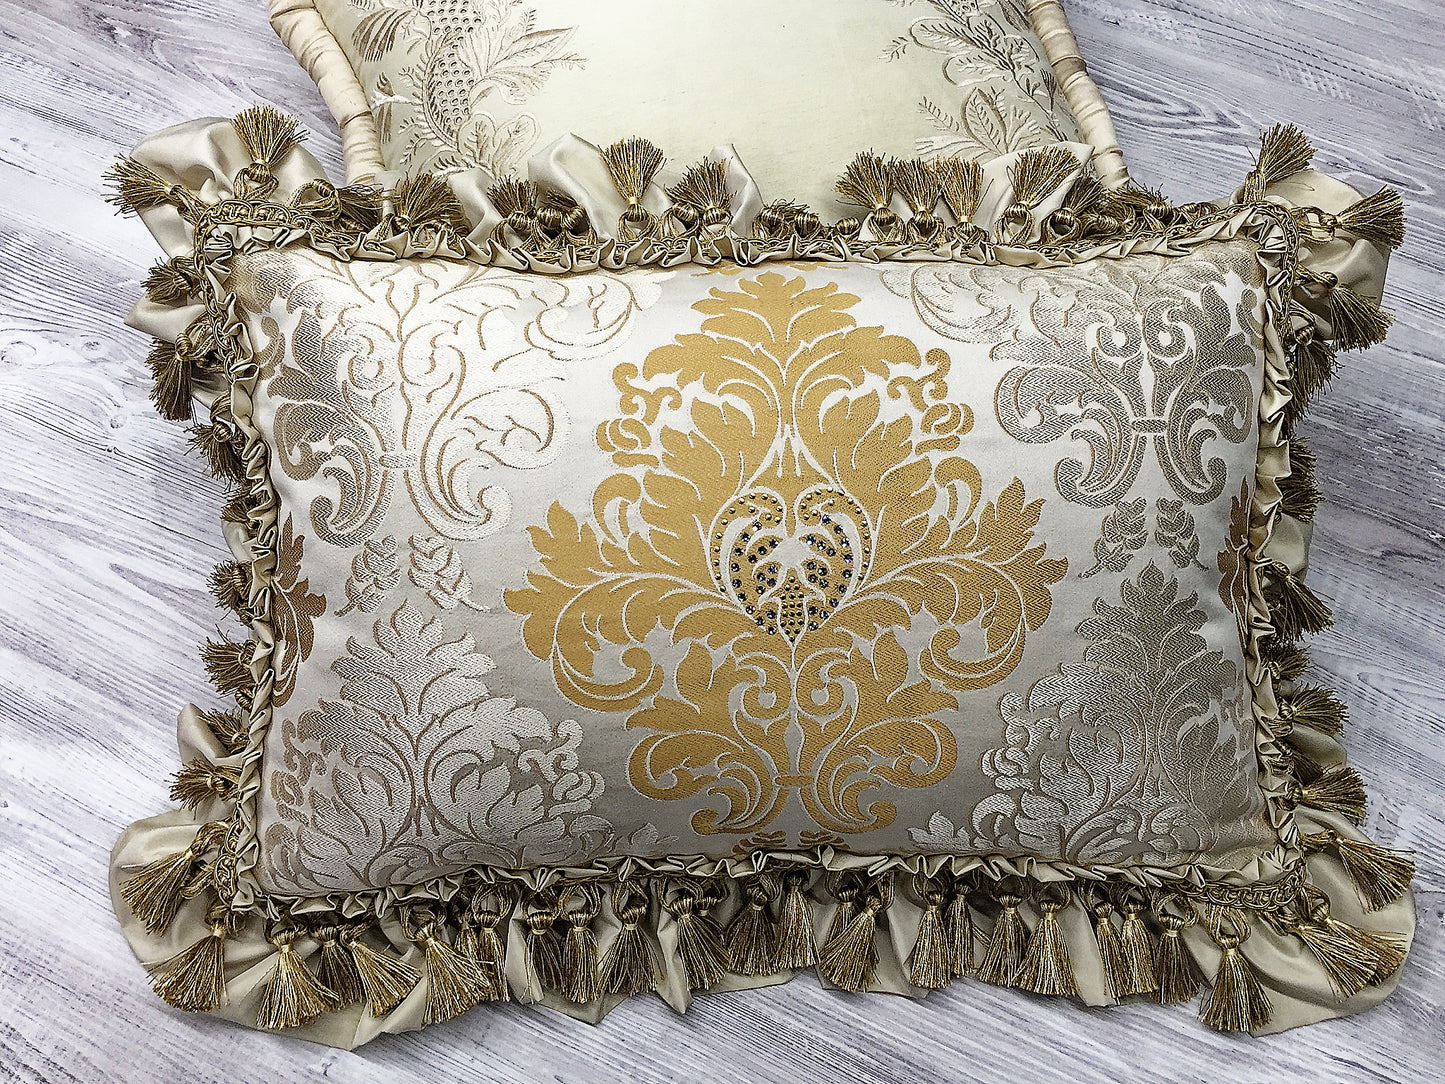 Luxury cushion "Swarovski Princess"